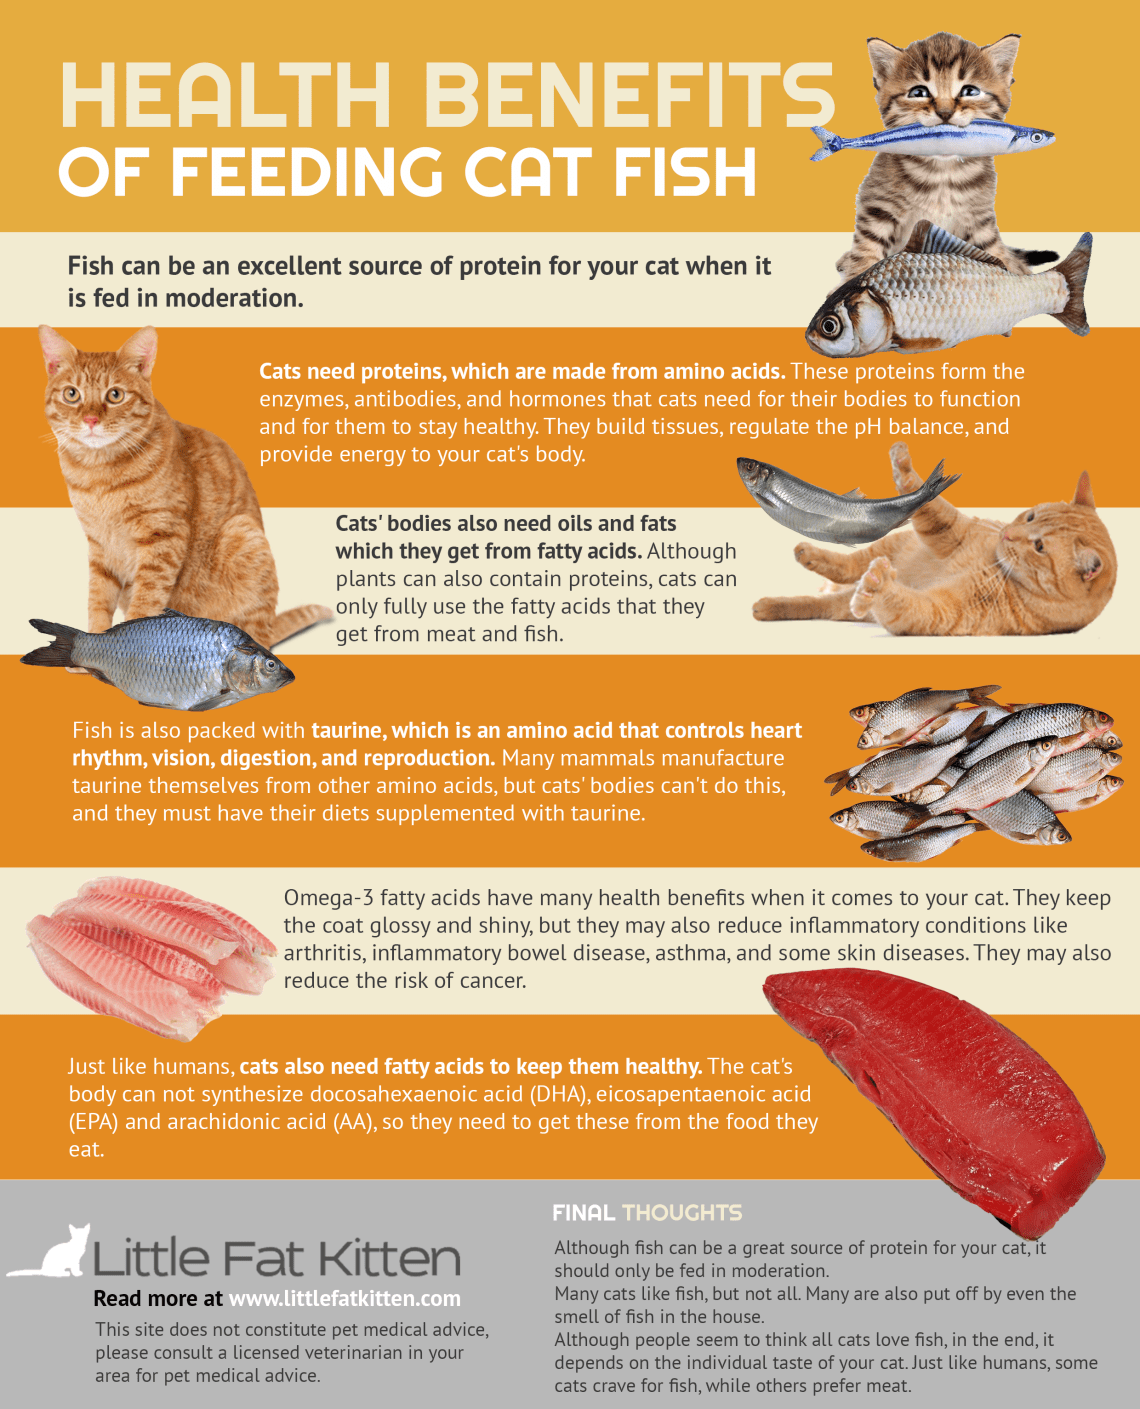 Կերակրե՛ք ձեր կատվին ձկներով՝ նրա առողջությունը պահպանելու համար